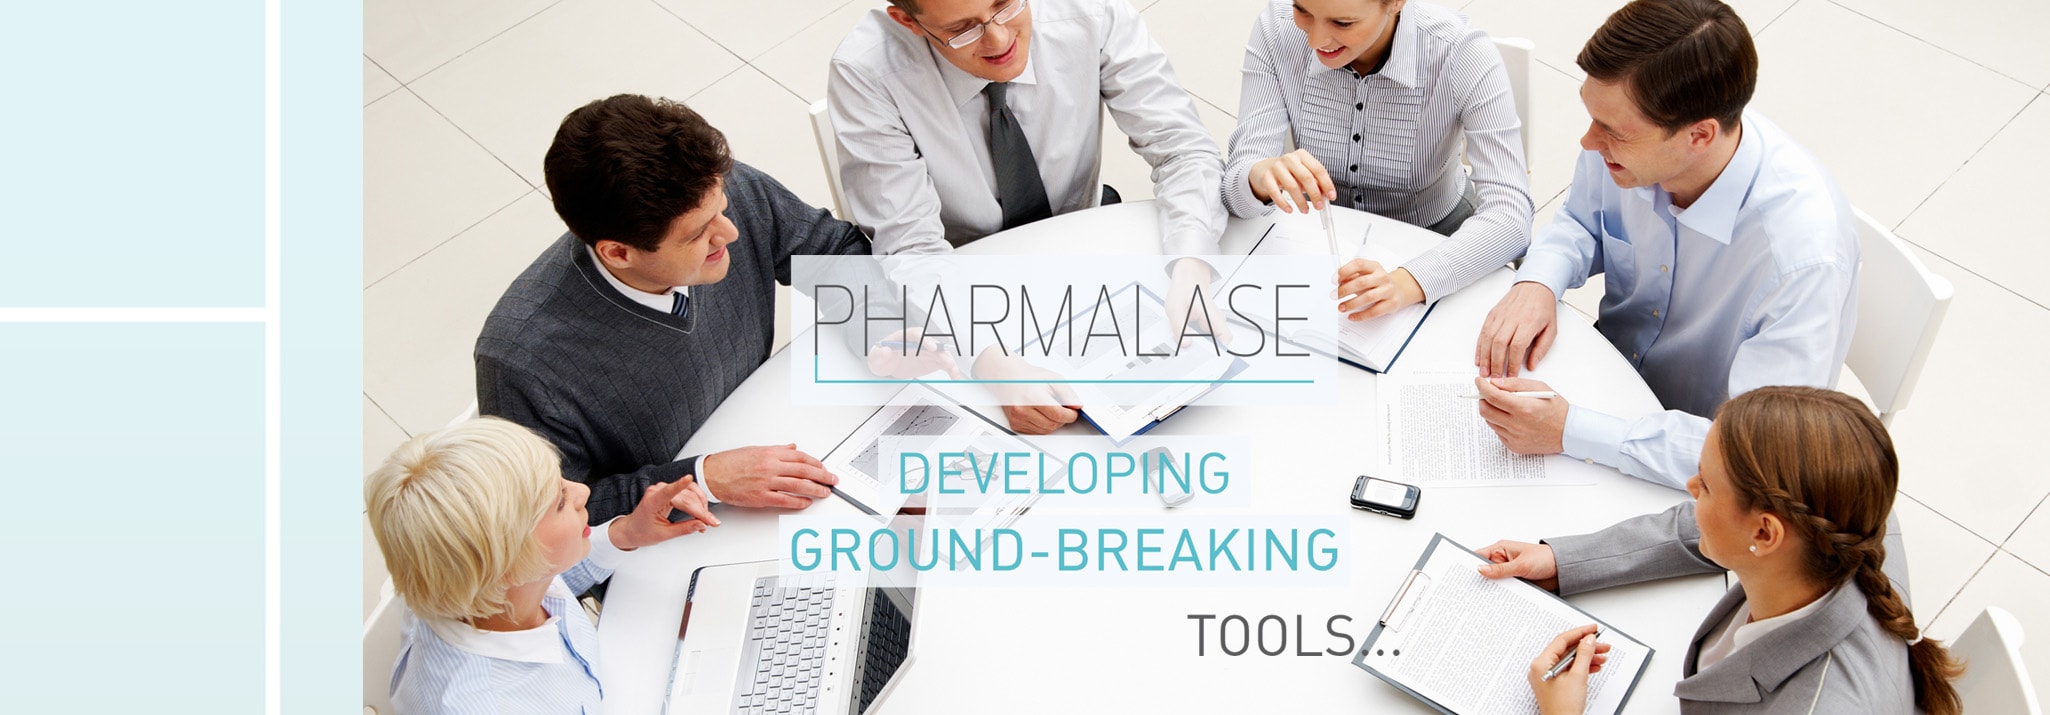 Pharmalase Ground-Breaking